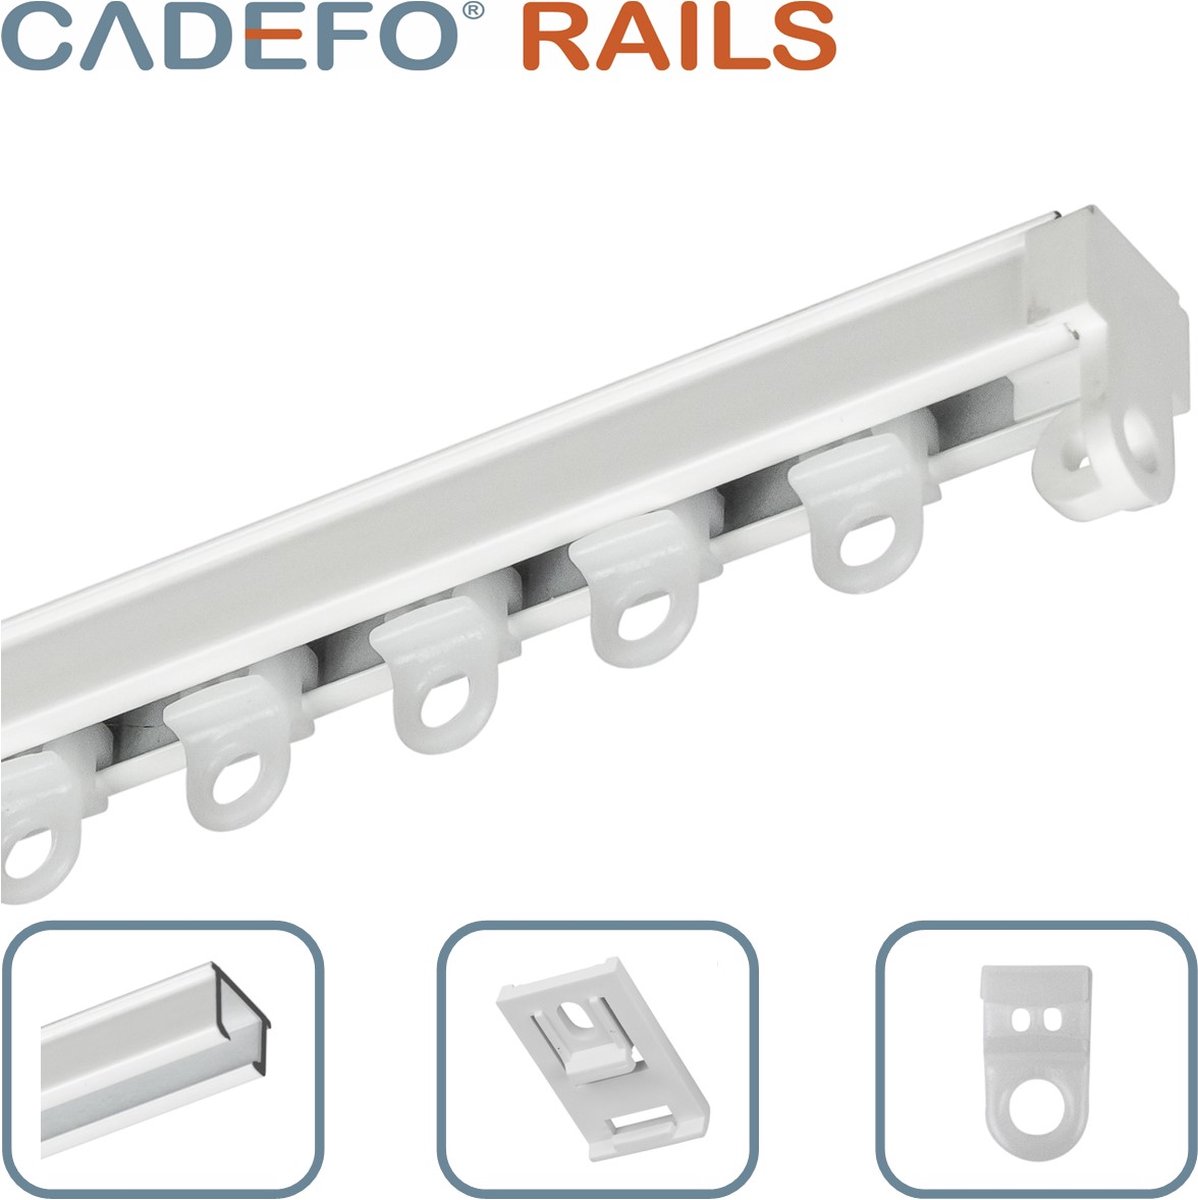 CADEFO RAILS (551 - 600 cm) Gordijnrails - Compleet op maat! - UIT 1 STUK - Leverbaar tot 6 meter - Plafondbevestiging - Lengte 571 cm